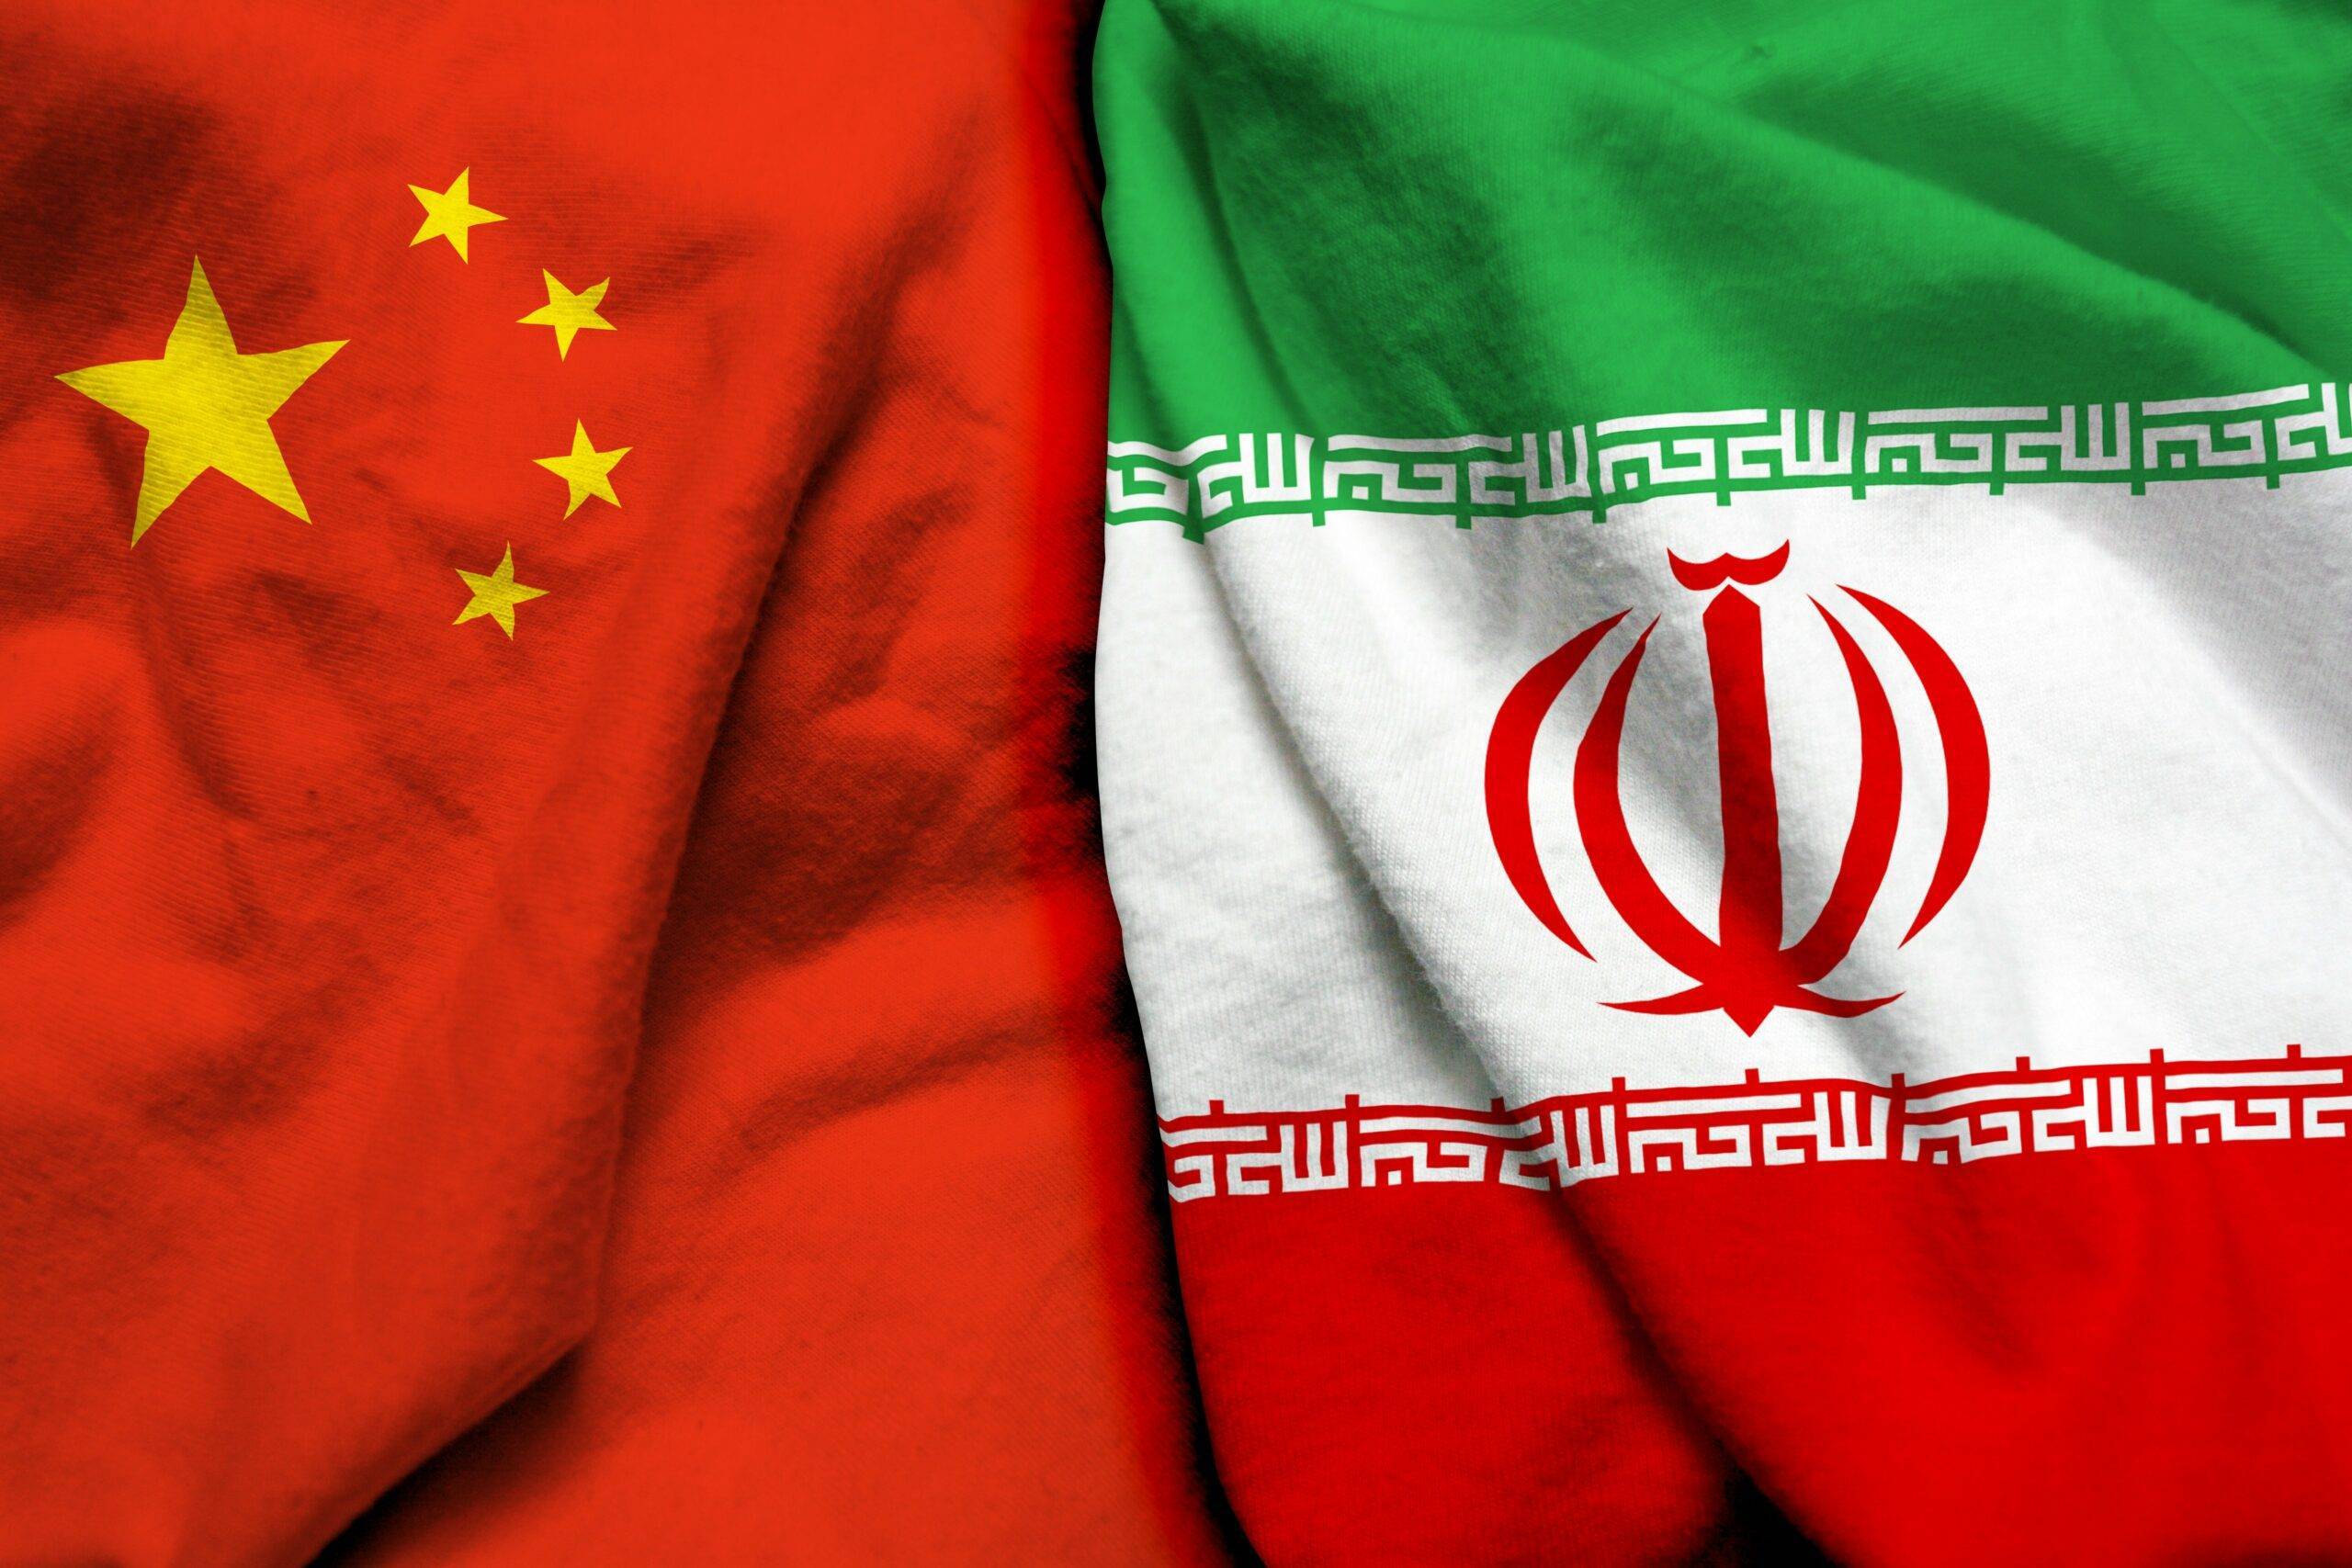 Accord entre la Chine et l'Iran.
Source: Shutterstock